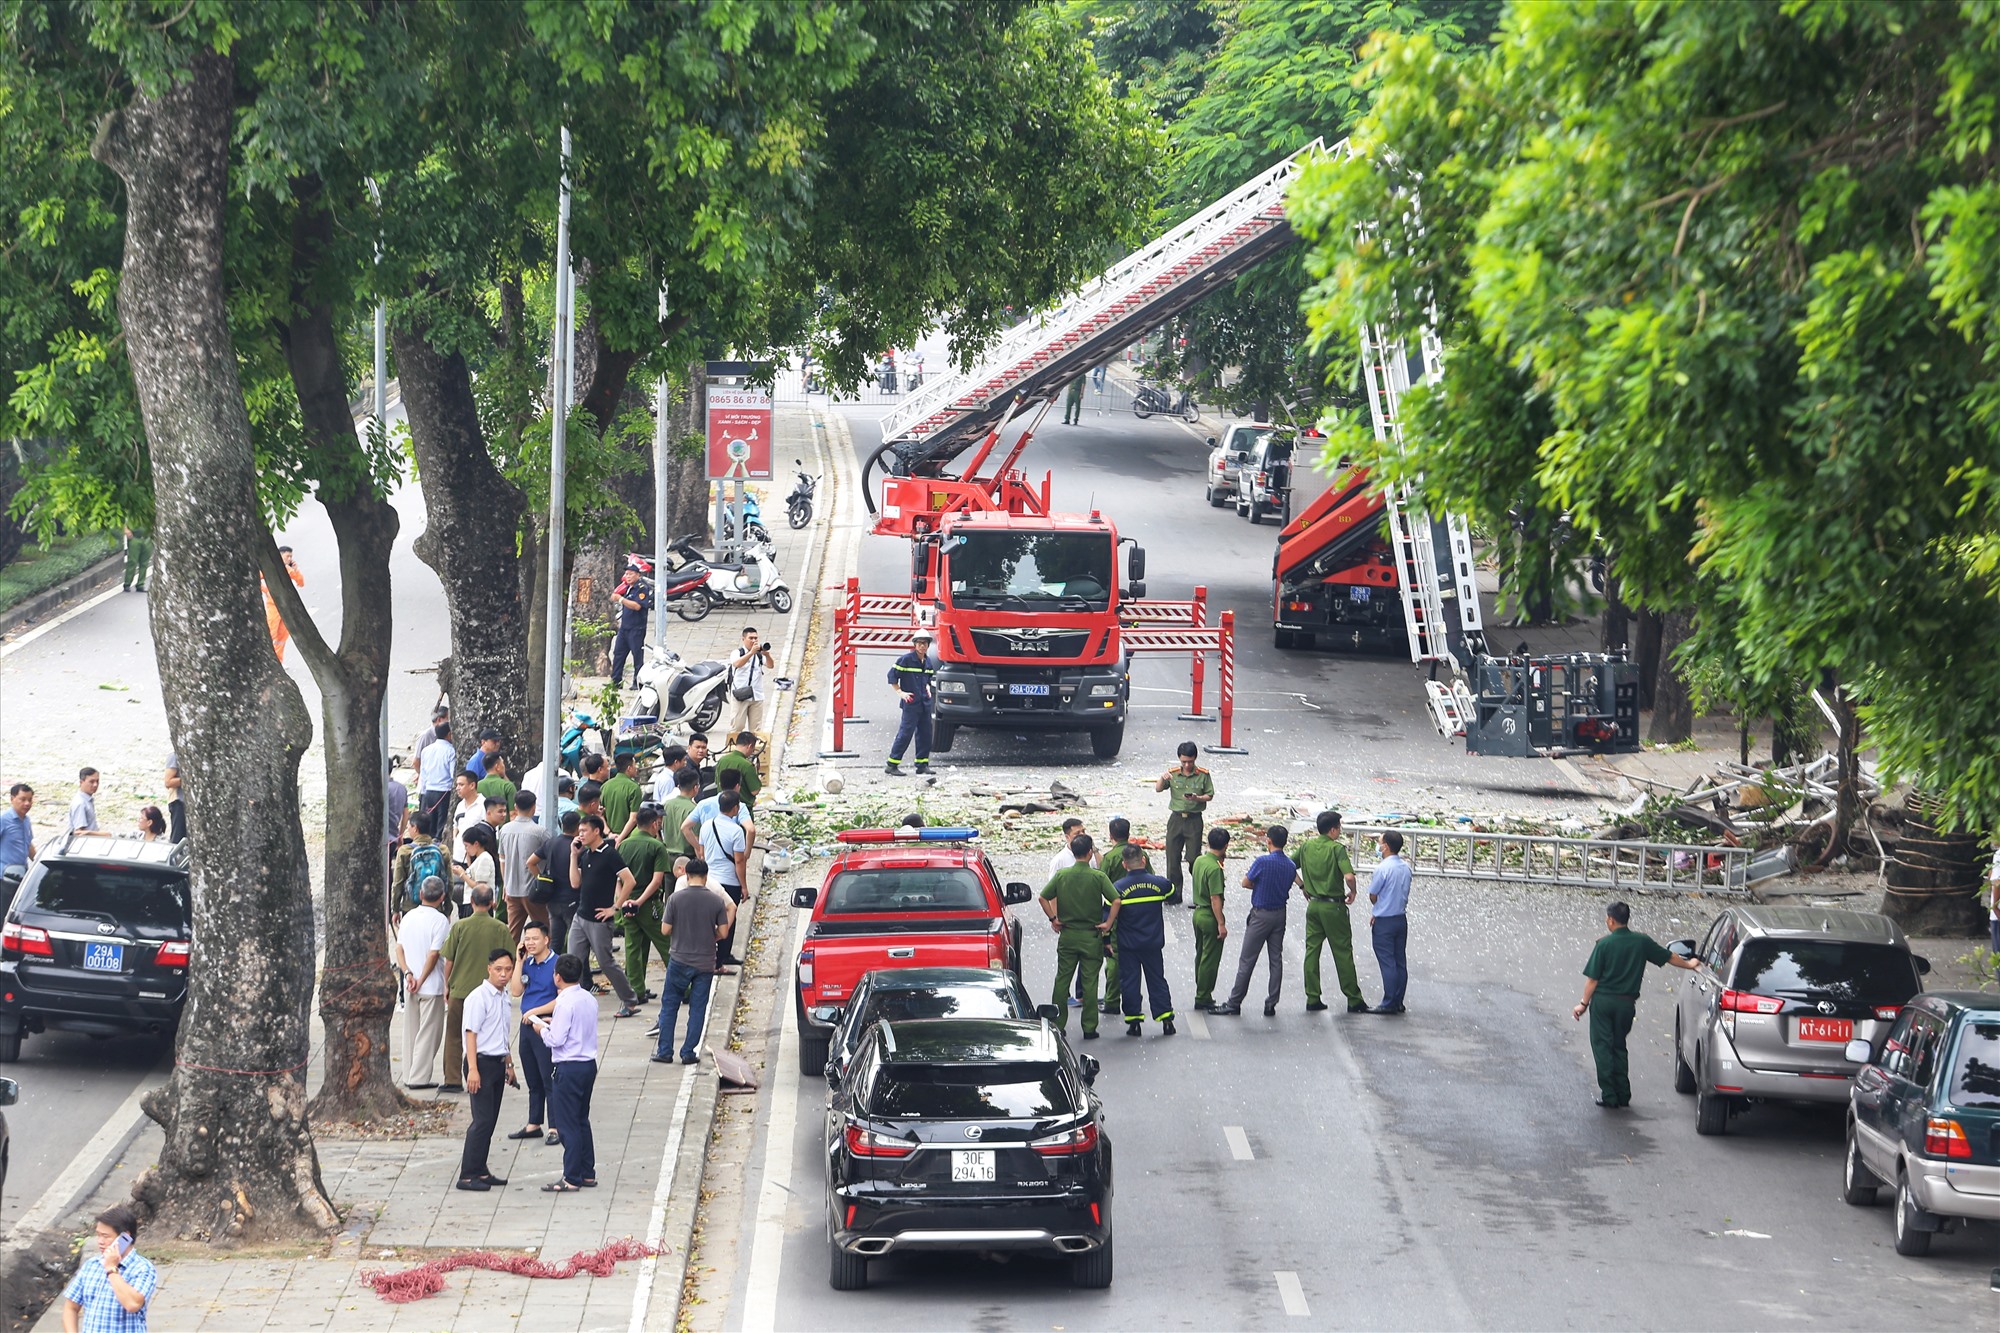 Theo ghi nhận của PV báo Lao Động, toàn bộ khu vực đường đi qua hiện trường đang bị tạm cấm để phục vụ công tác điều tra.